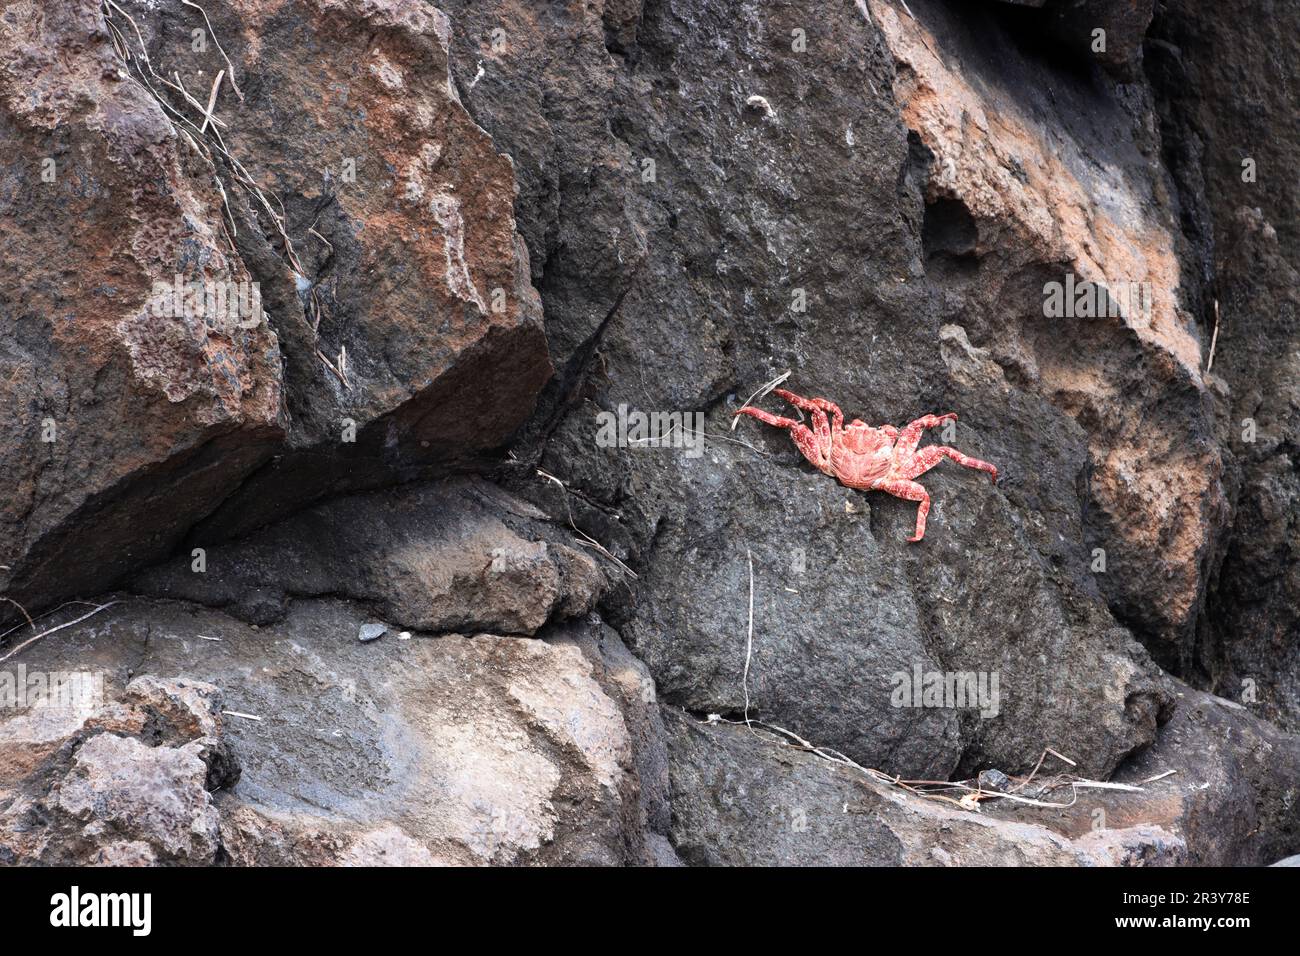 Conchiglia di Molt (exuvium) di un Grapsus adscensionis - granchio di roccia rossa dell'Atlantico orientale Foto Stock